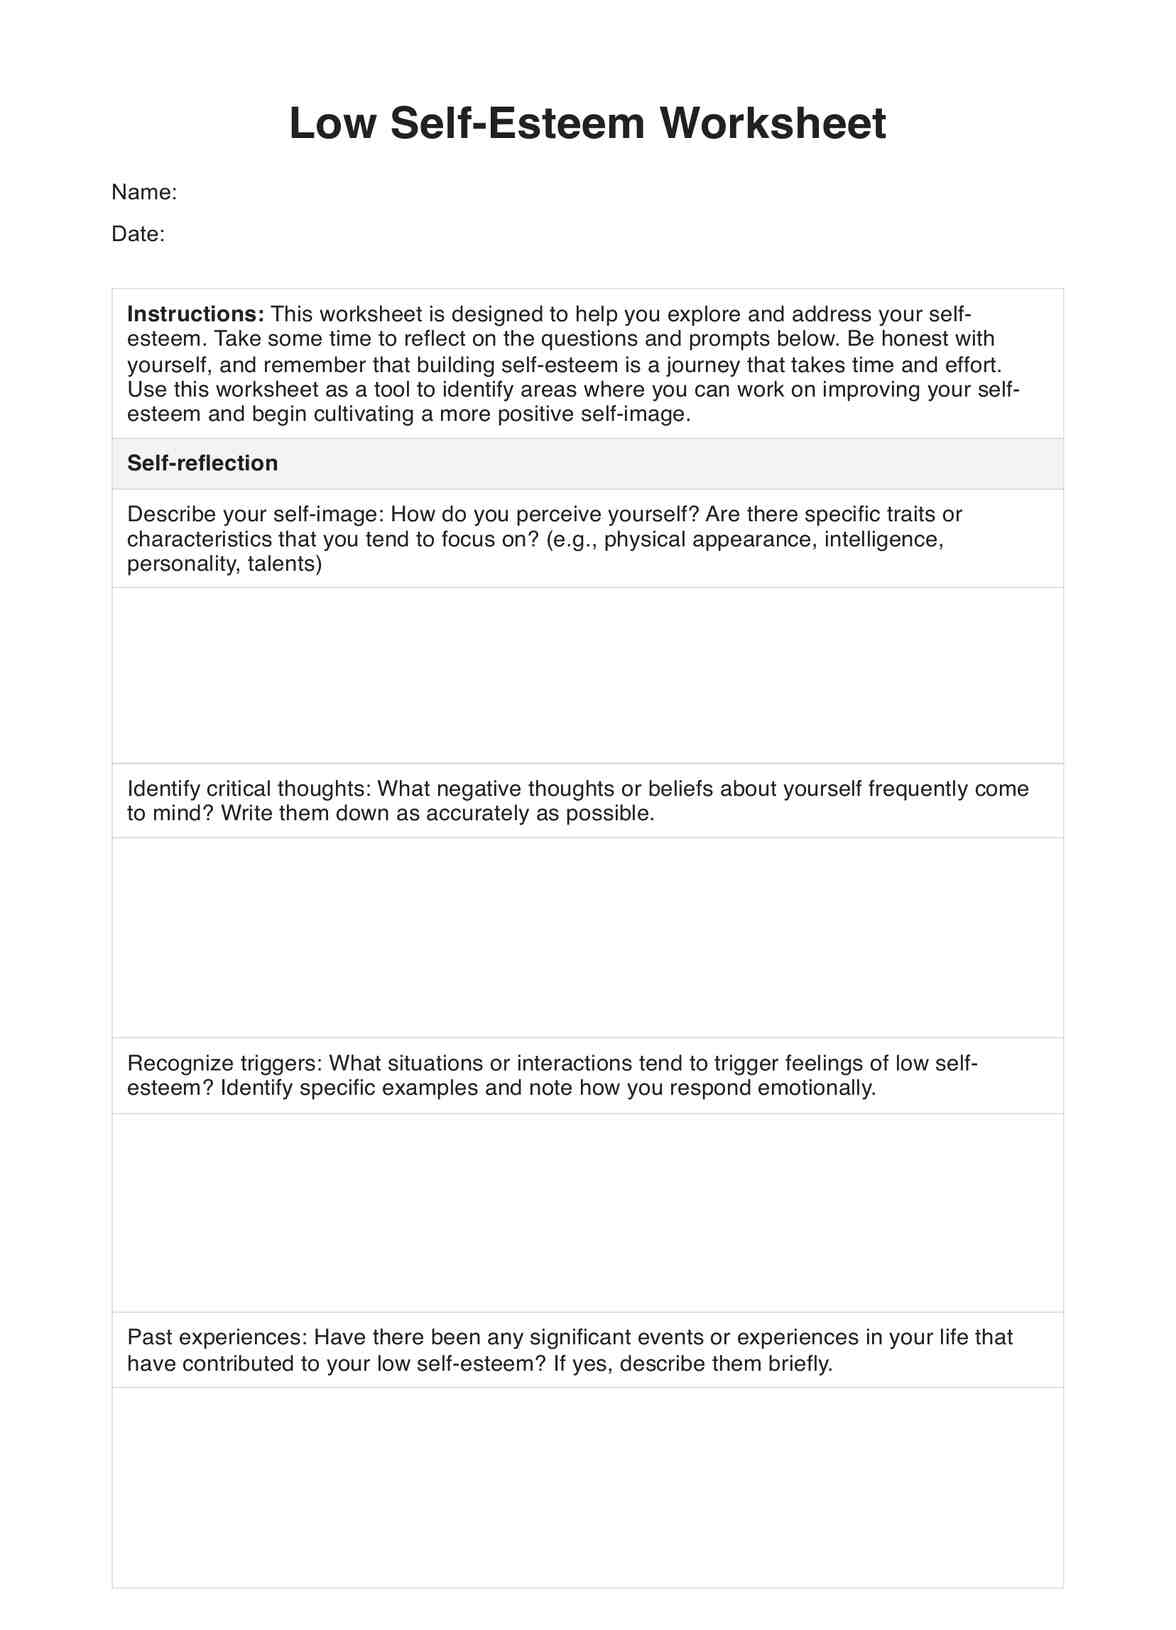 Low Self-Esteem Worksheet PDF Example